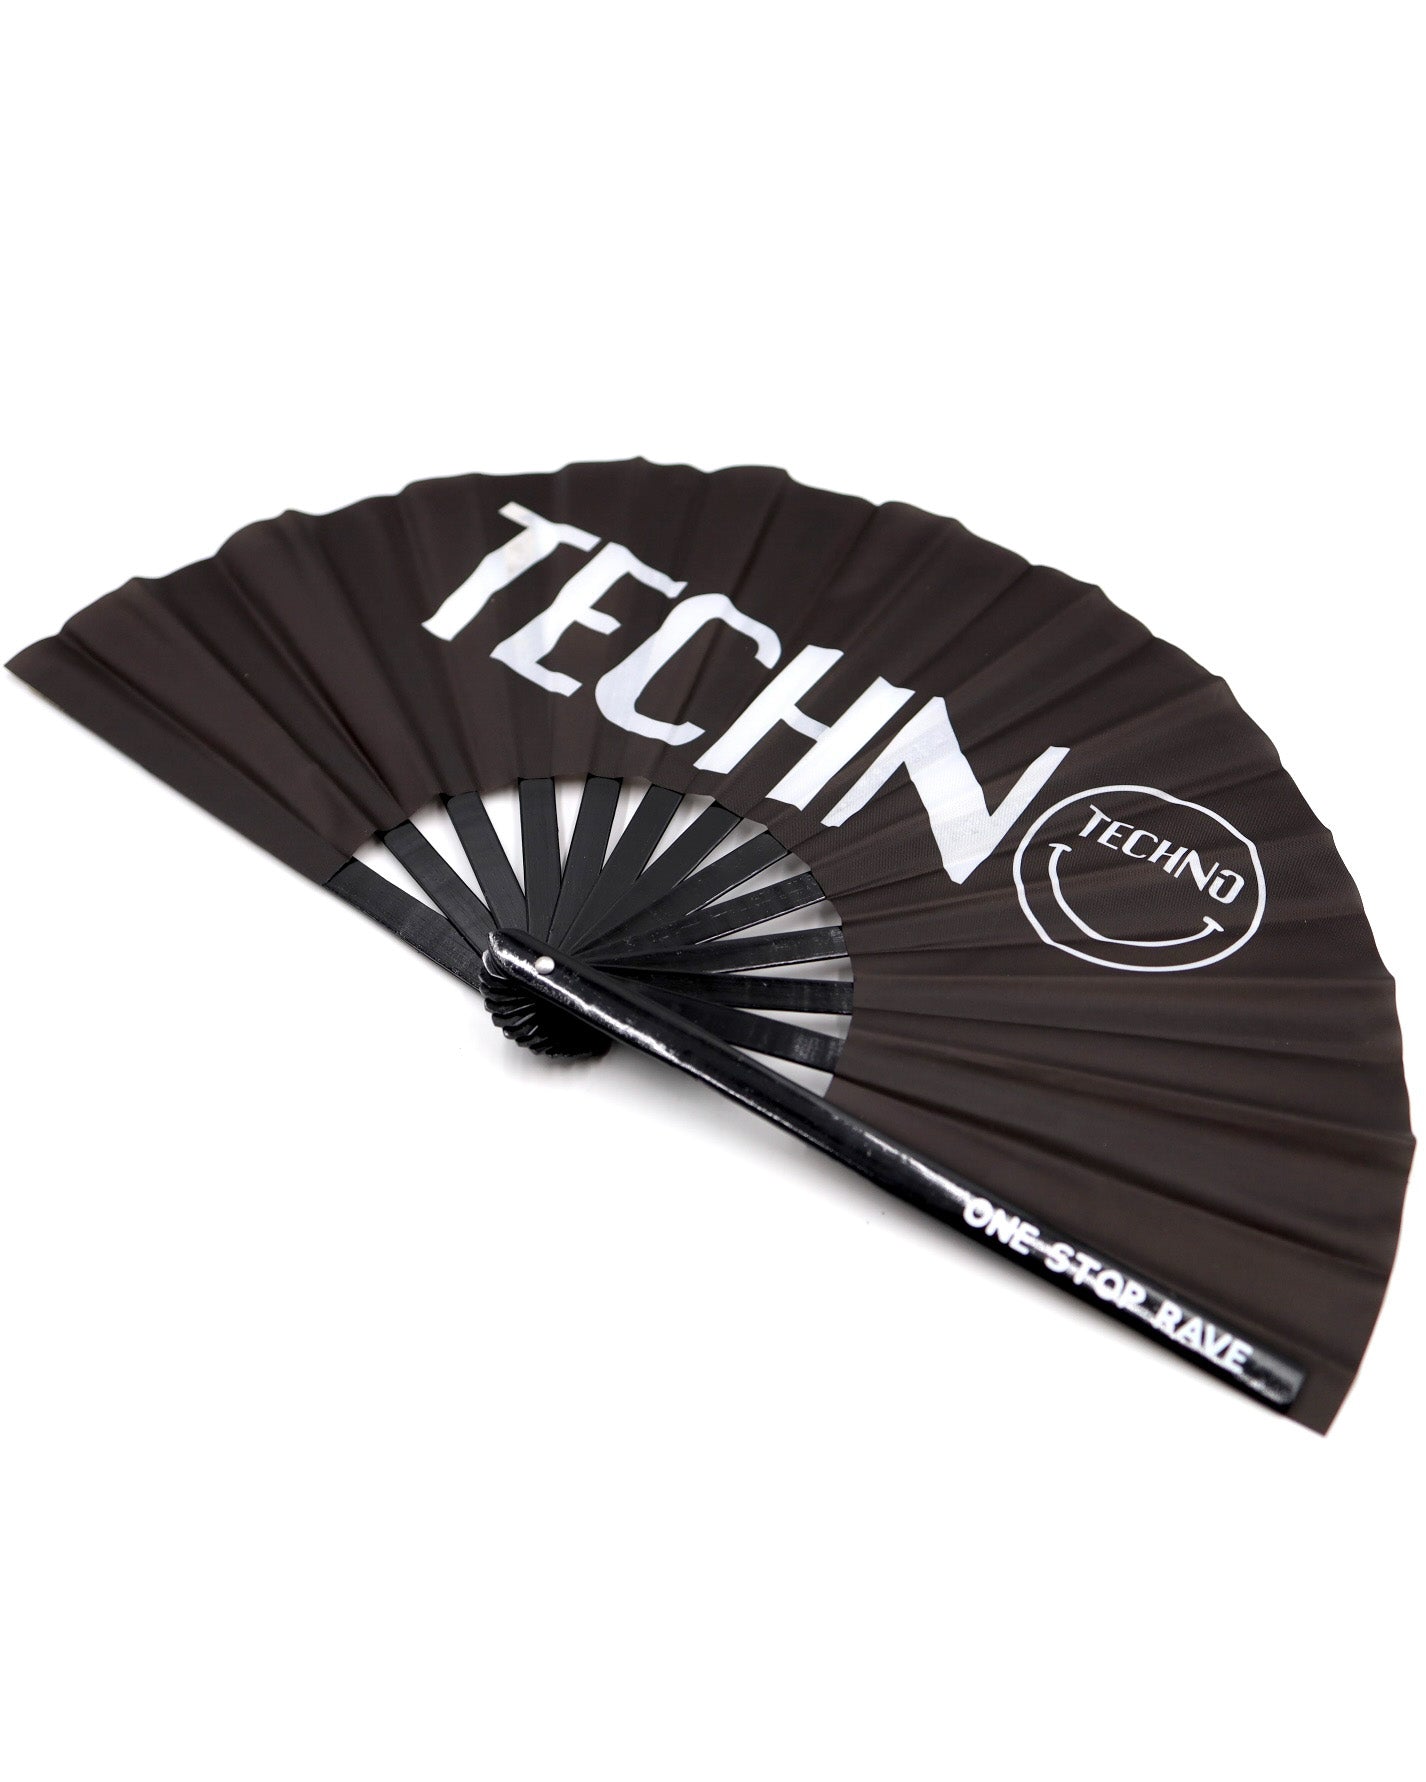 Techno Head Hand Fan, Festival Fans 13.5", - One Stop Rave